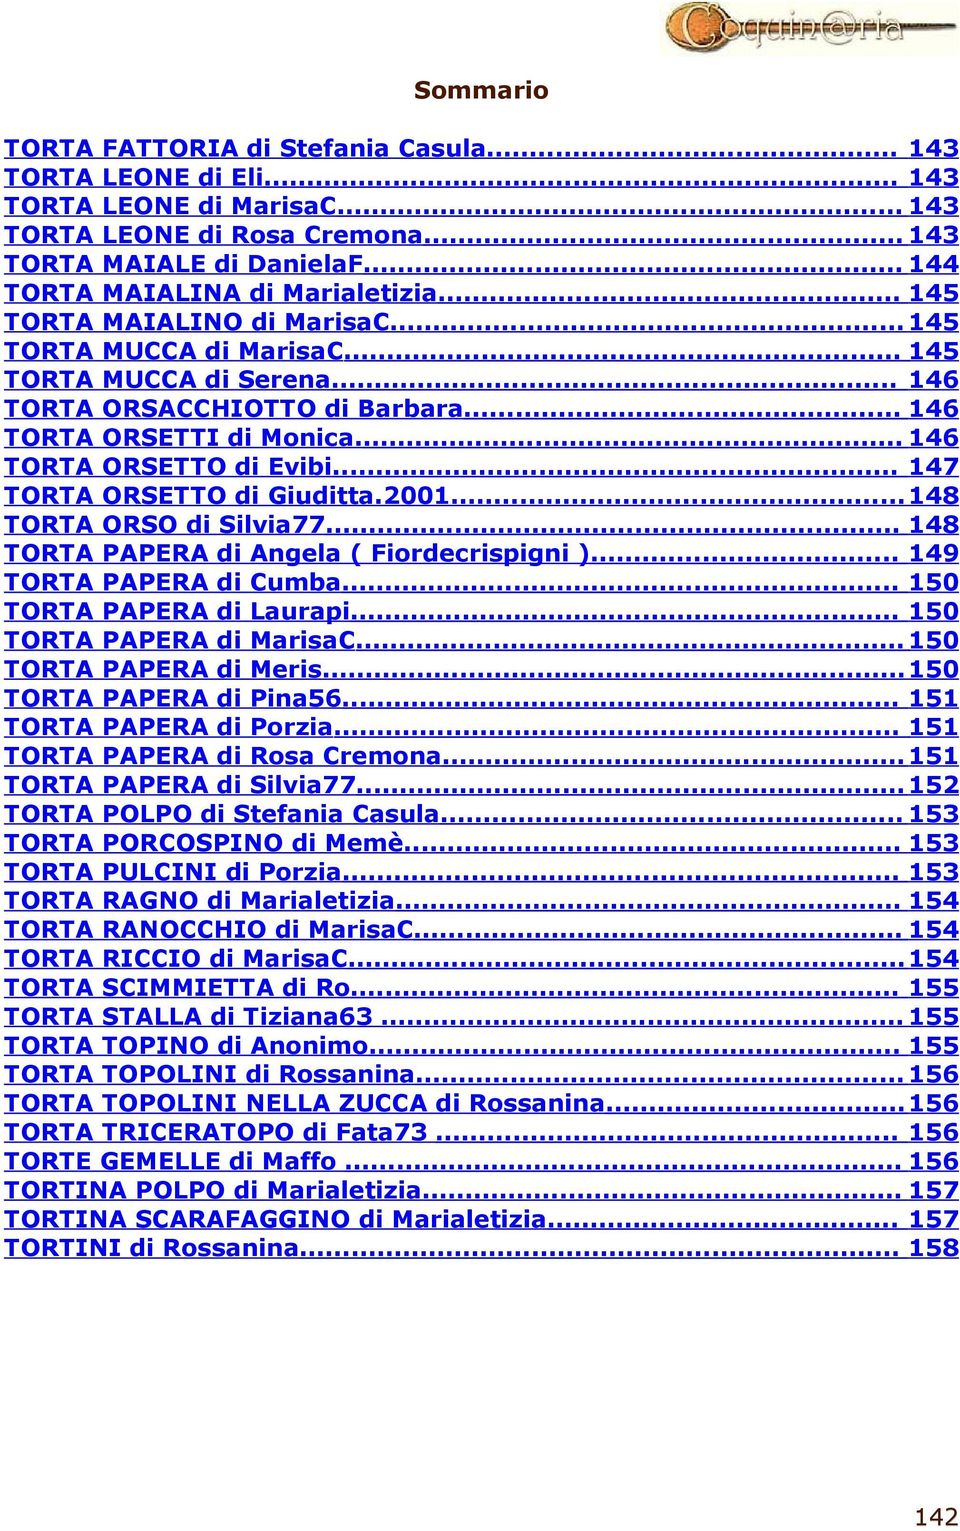 ... 146 TORTA ORSETTO di Evibi... 147 TORTA ORSETTO di Giuditta.2001...148 TORTA ORSO di Silvia77... 148 TORTA PAPERA di Angela ( Fiordecrispigni )... 149 TORTA PAPERA di Cumba.